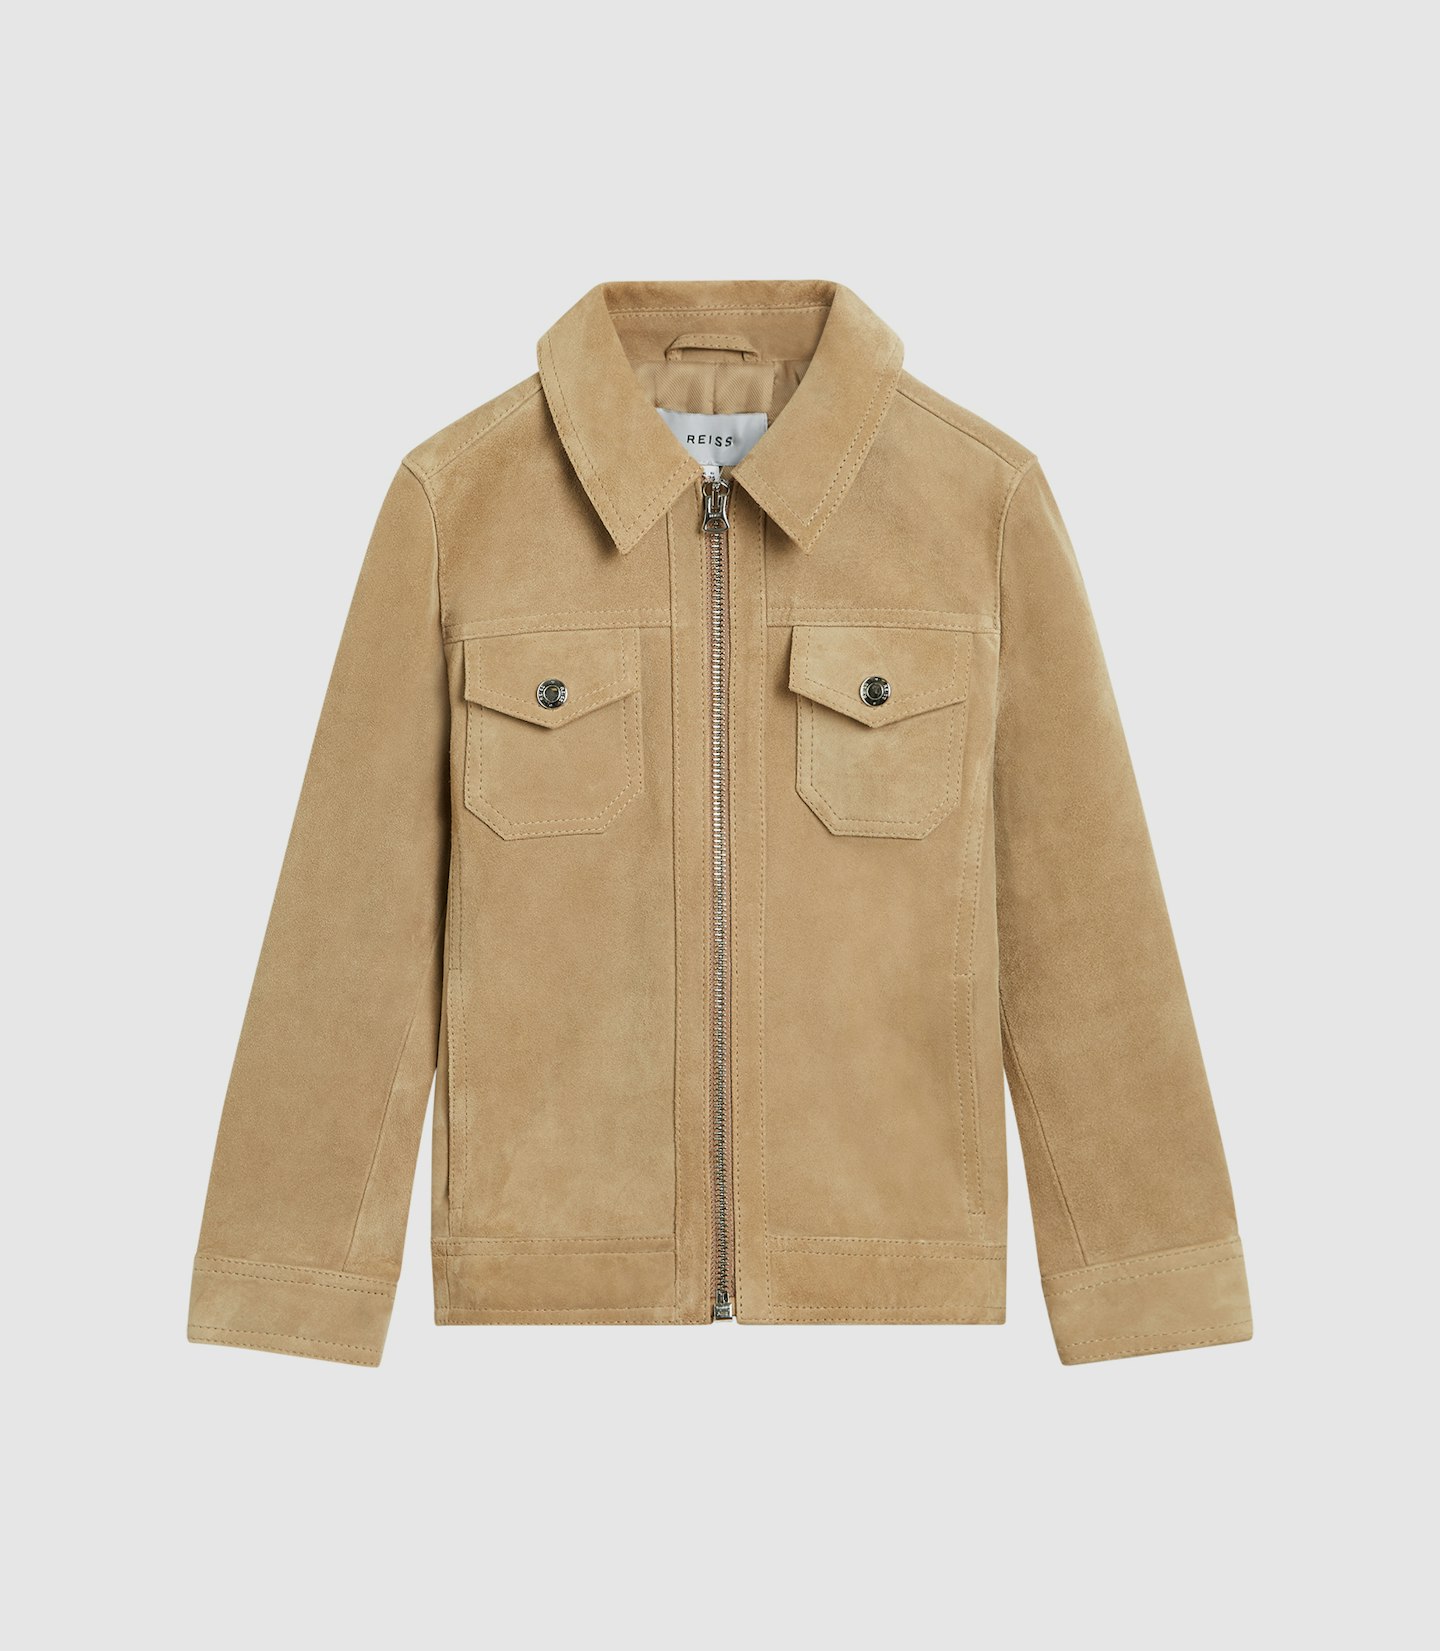 Suede Zip-Through Jacket, £138